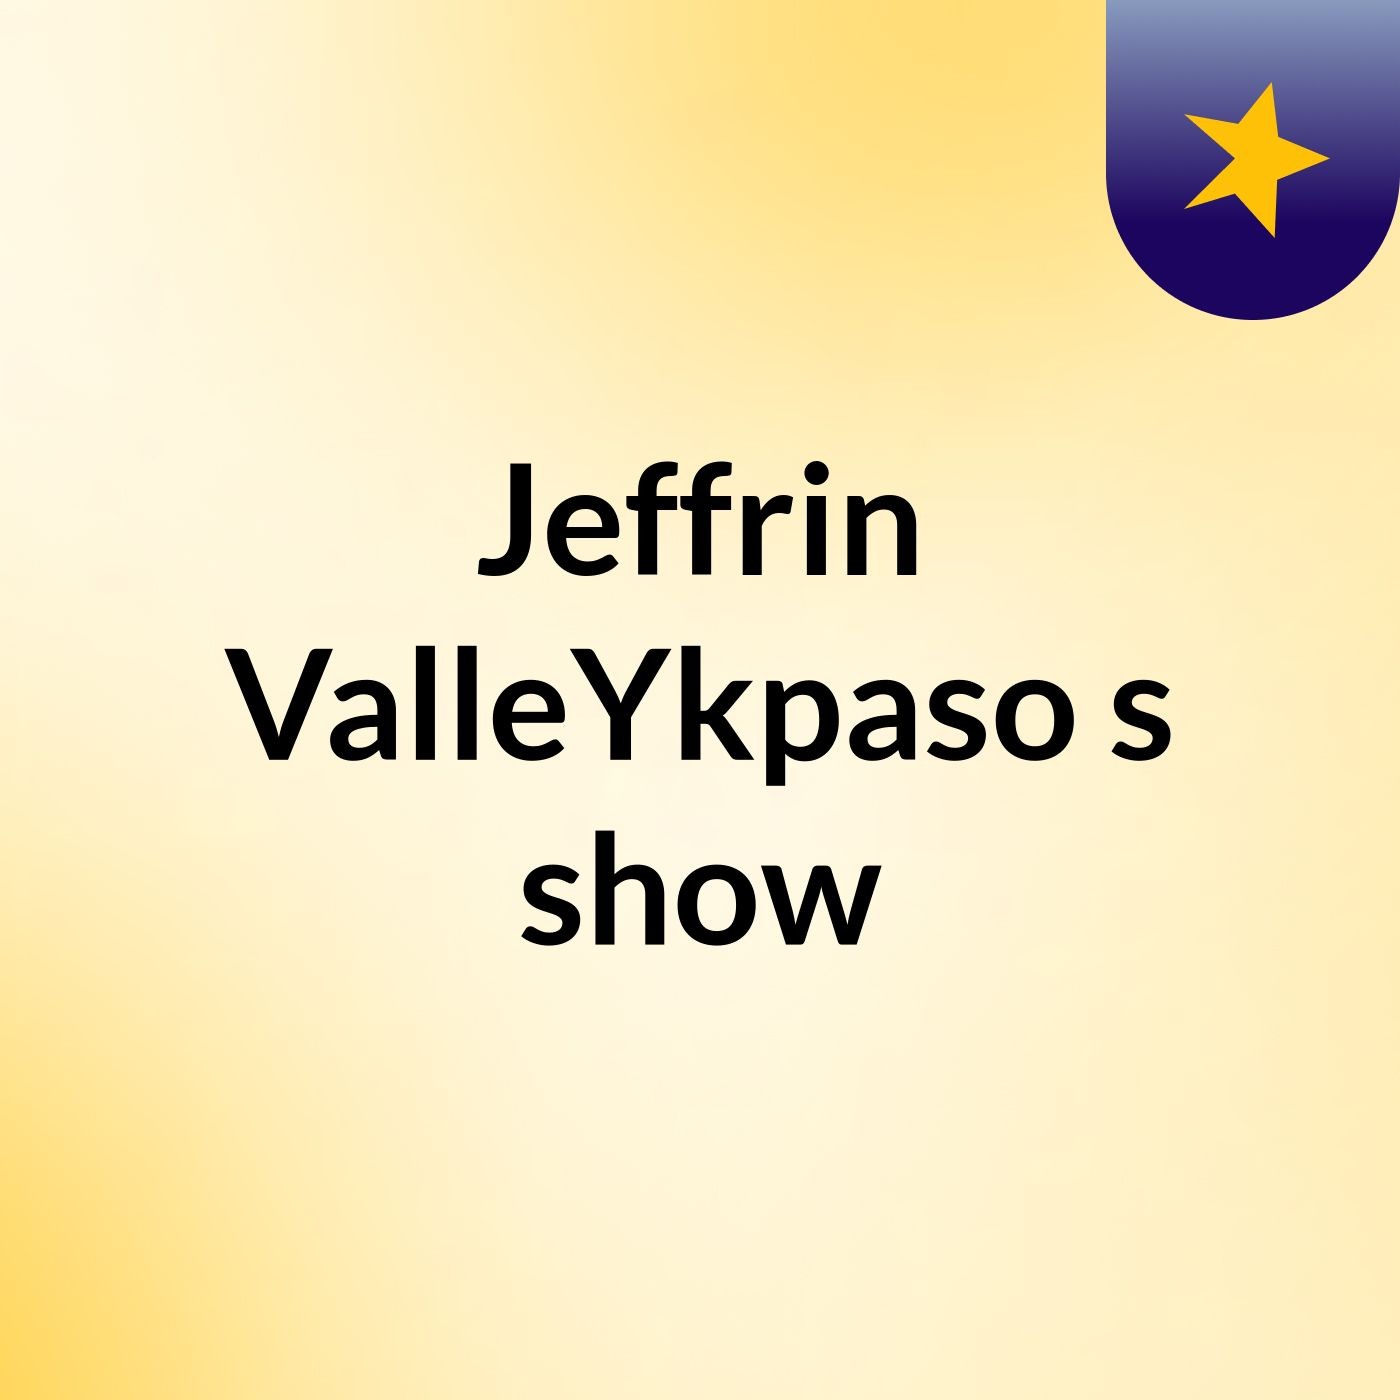 Jeffrin ValleYkpaso's show